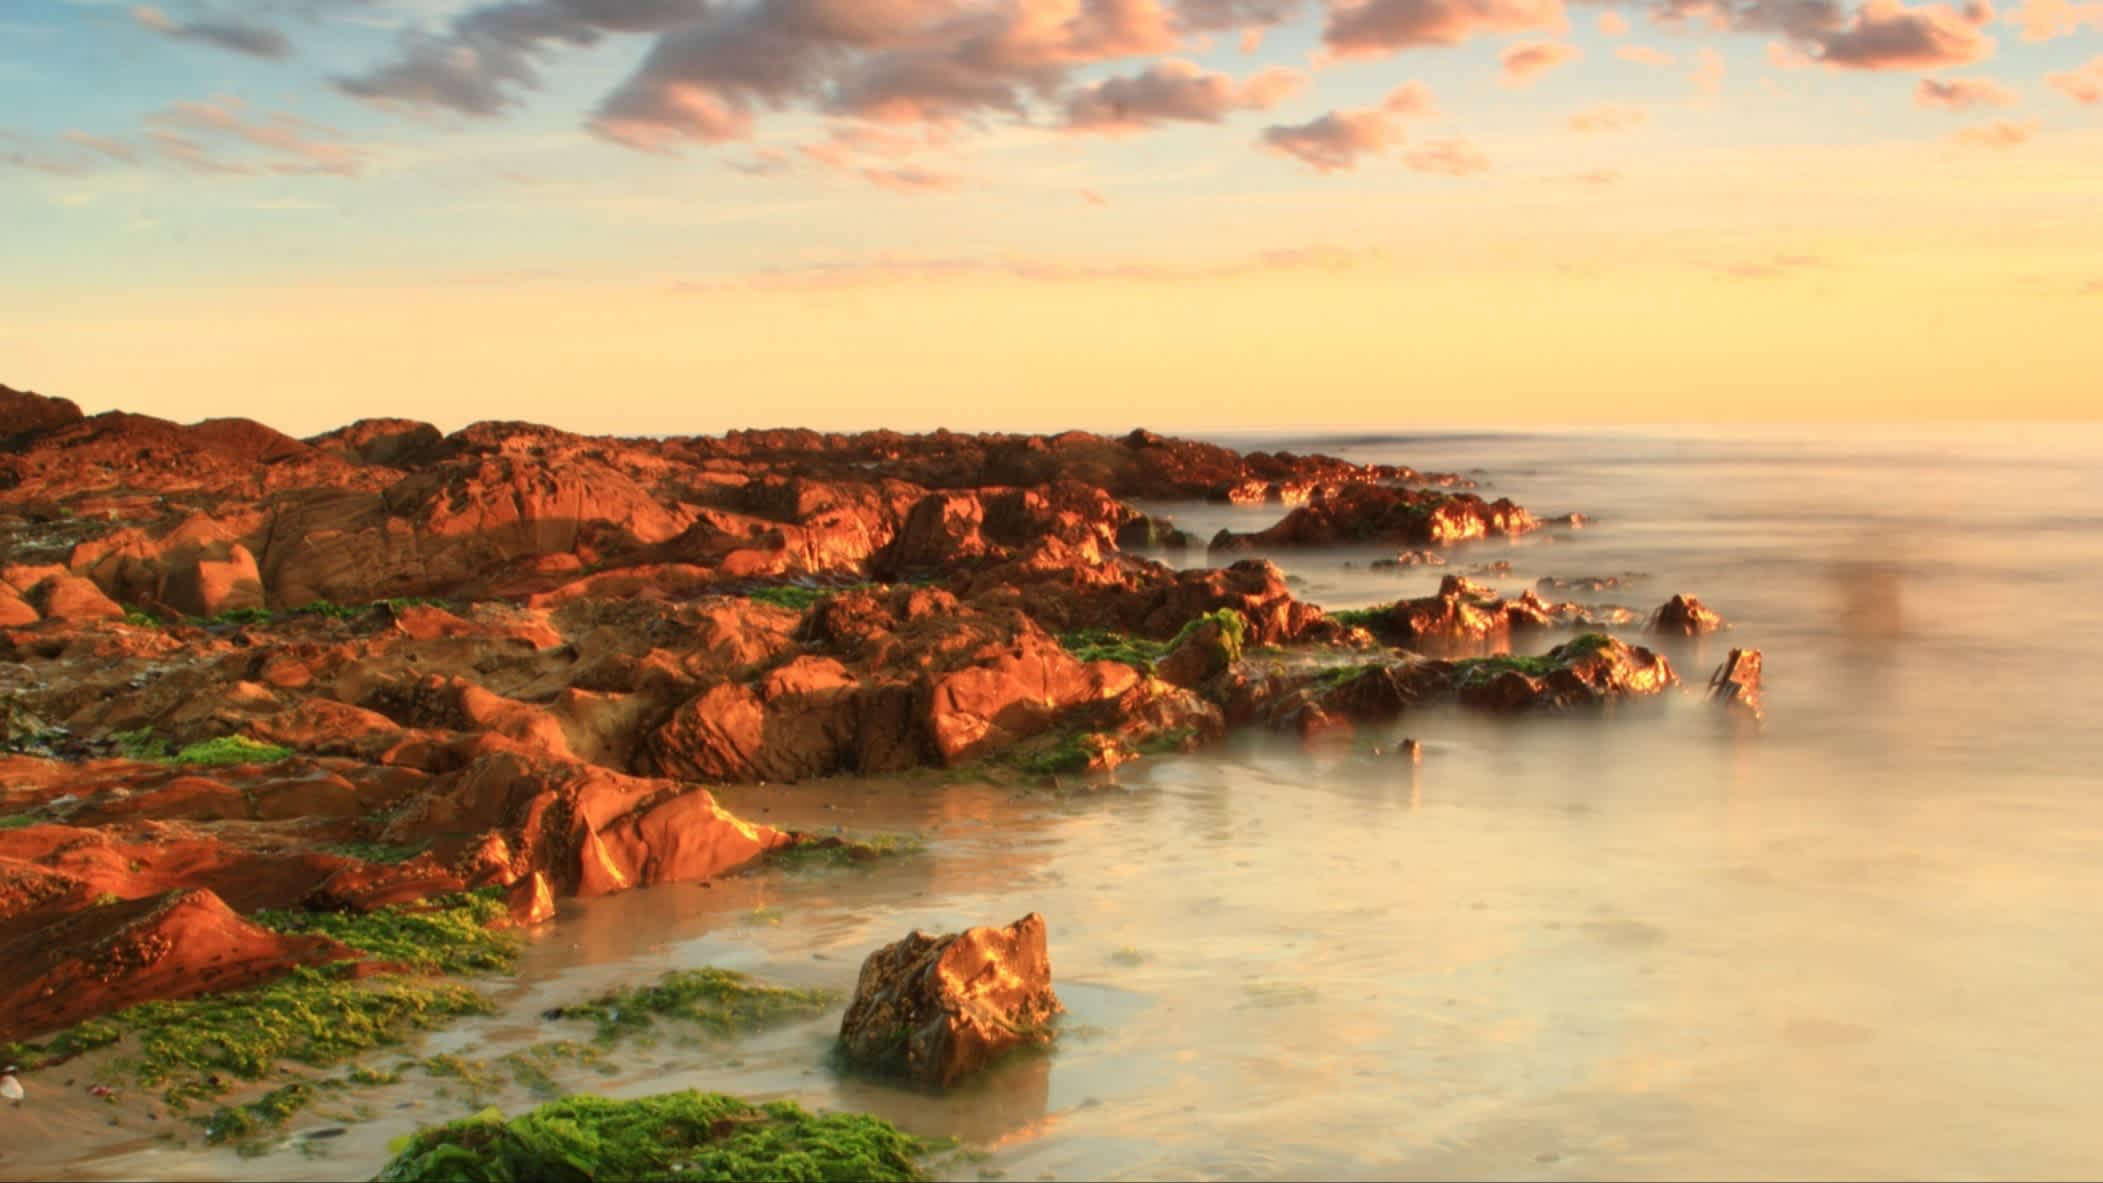 Rochers dans l'eau au coucher du soleil, sur la plage de Los Botes, La Paloma, Uruguay

